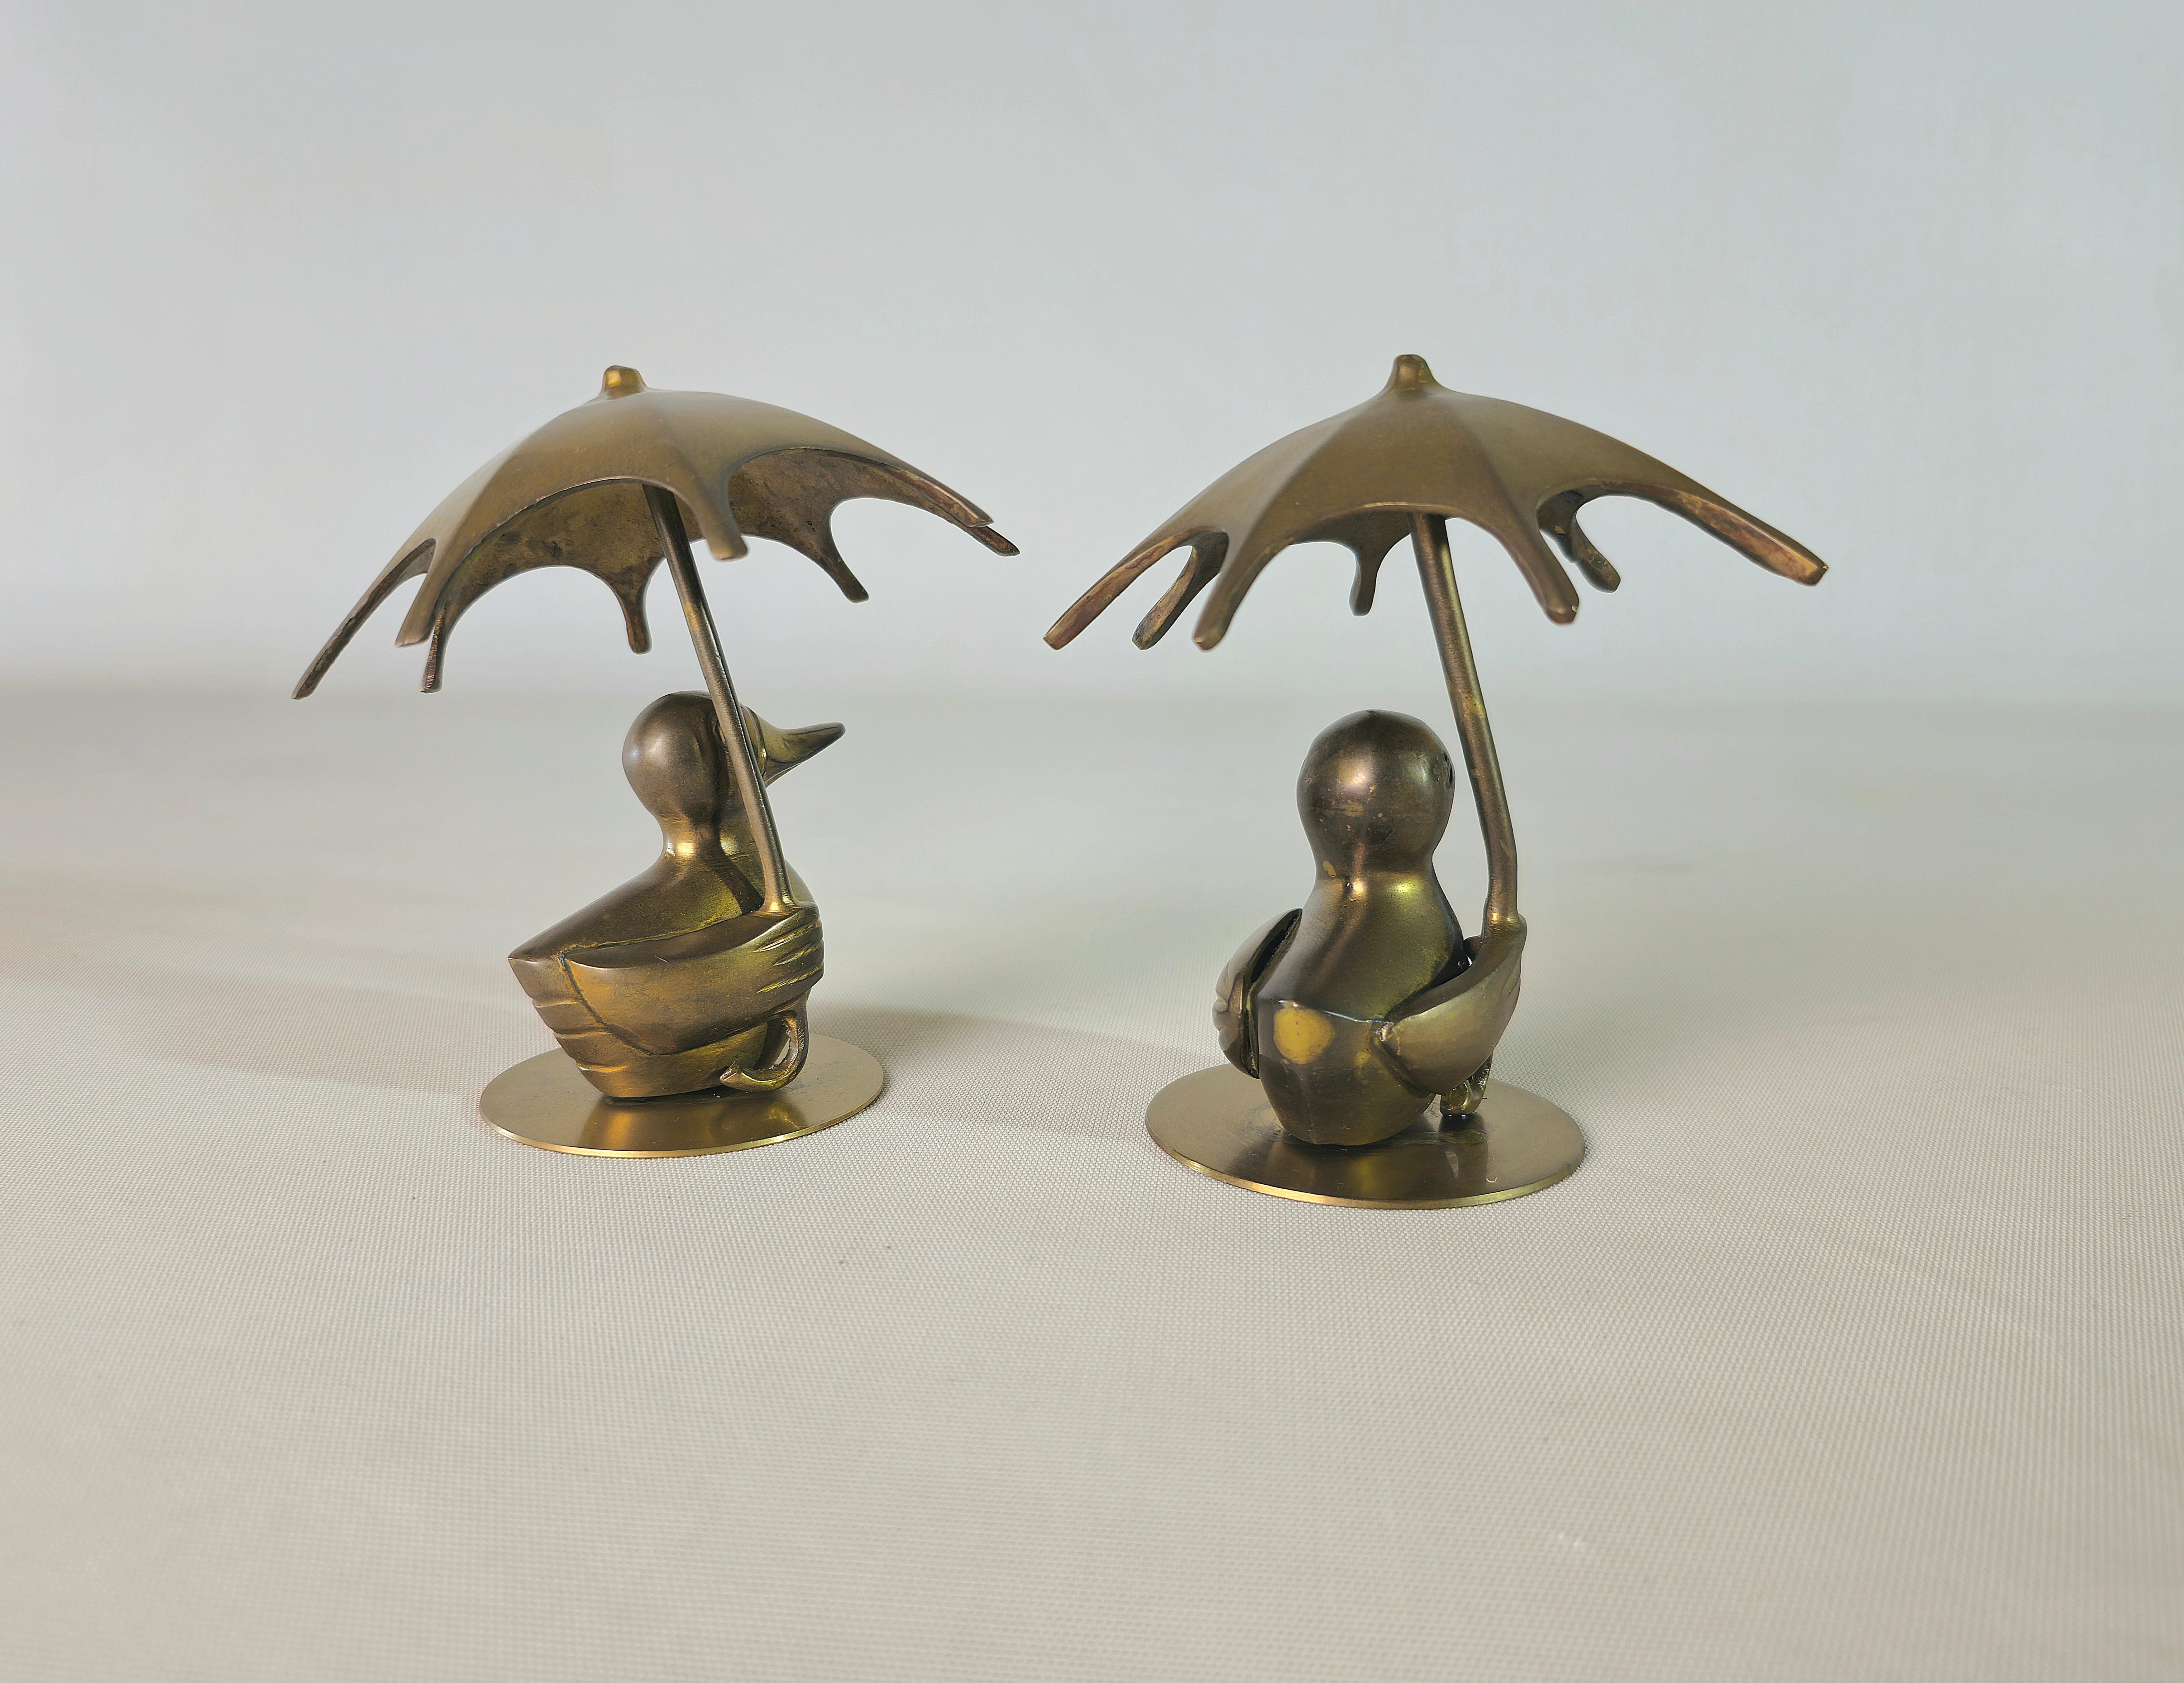 De jolis canards en laiton qui se promènent avec des parapluies pour s'abriter de la pluie ou du soleil.

Note : Nous essayons d'offrir à nos clients un excellent service, même pour les envois dans le monde entier, en collaborant avec l'un des